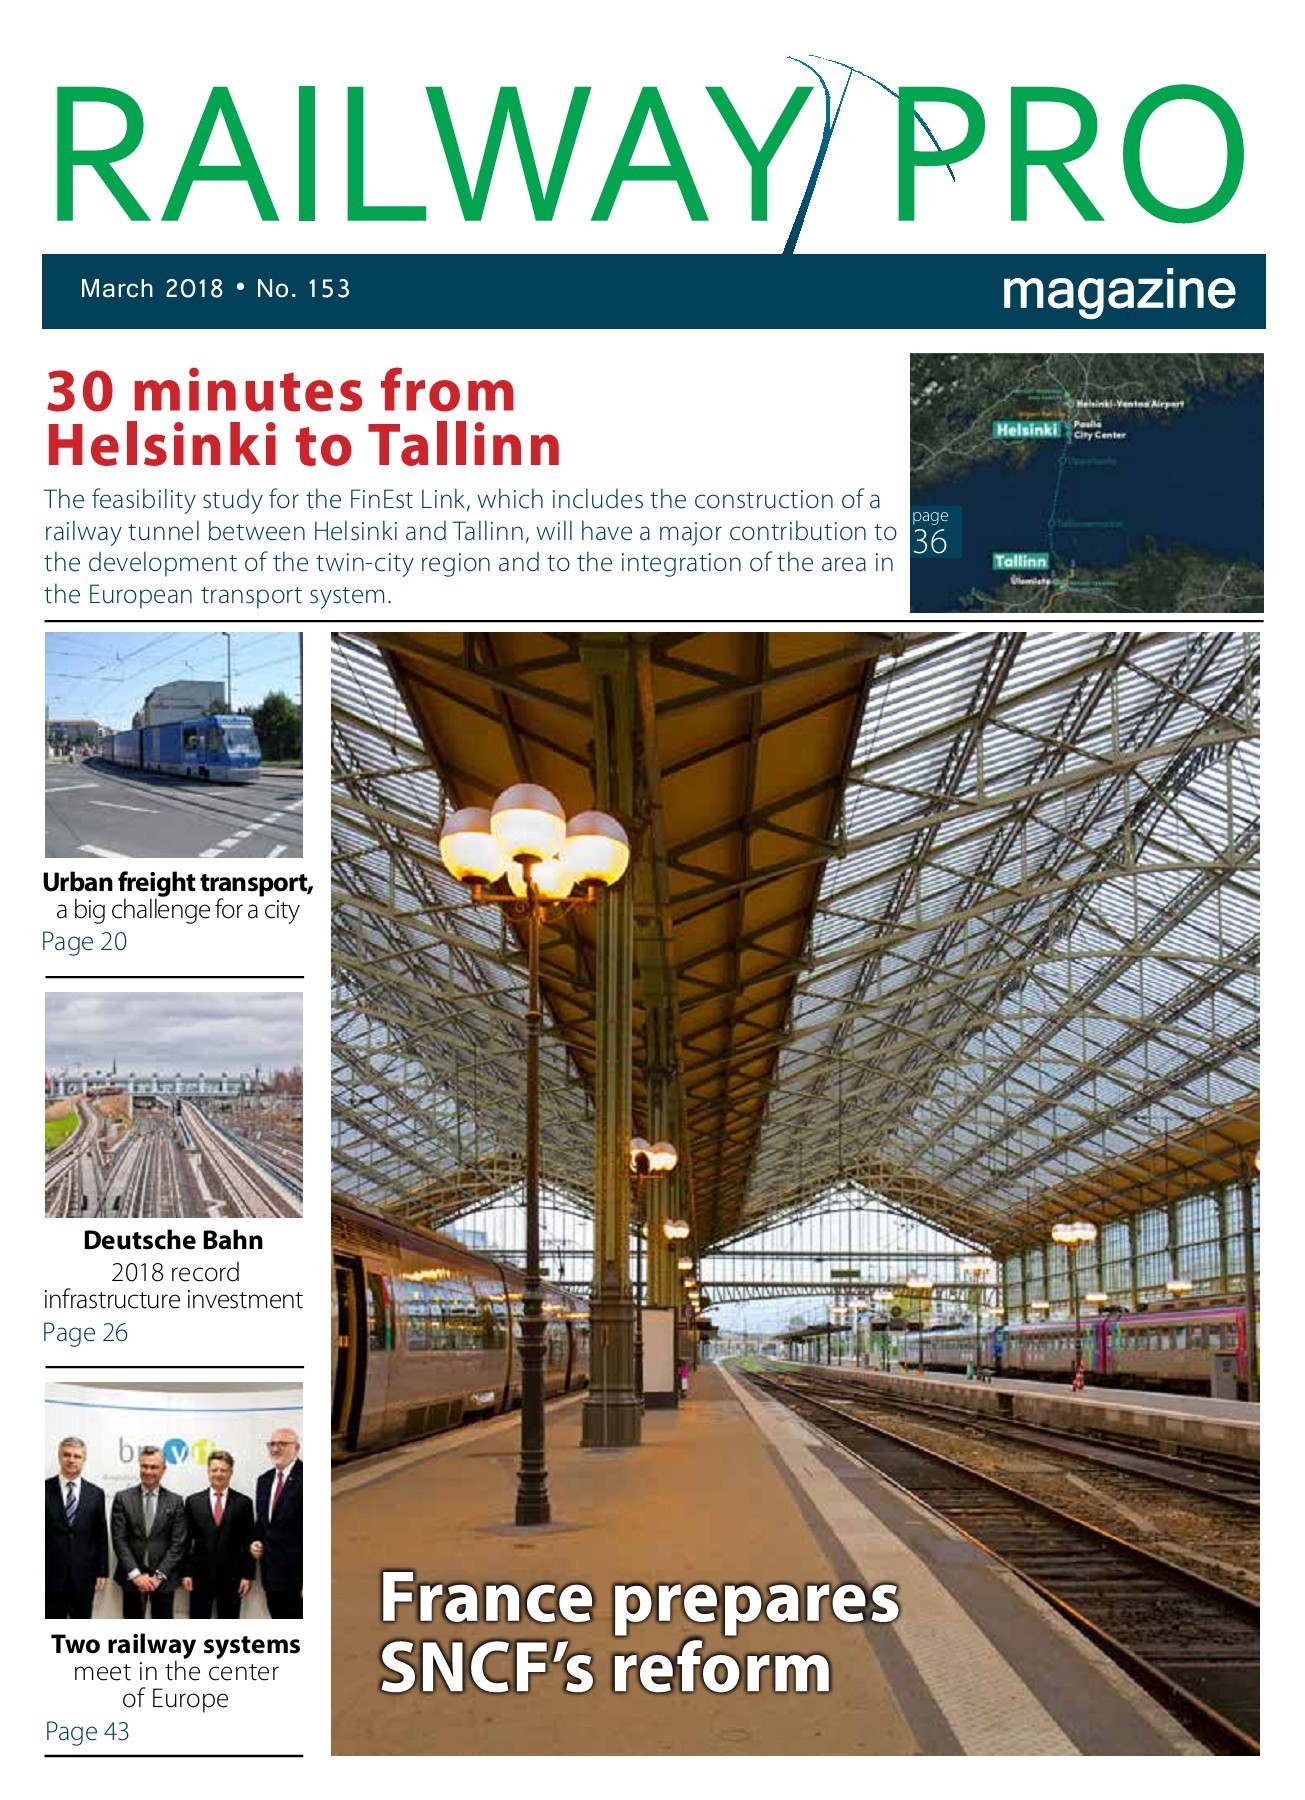 Asia Garten Leipzig Schön Railway Pro Magazine March Pages 1 50 Text Version